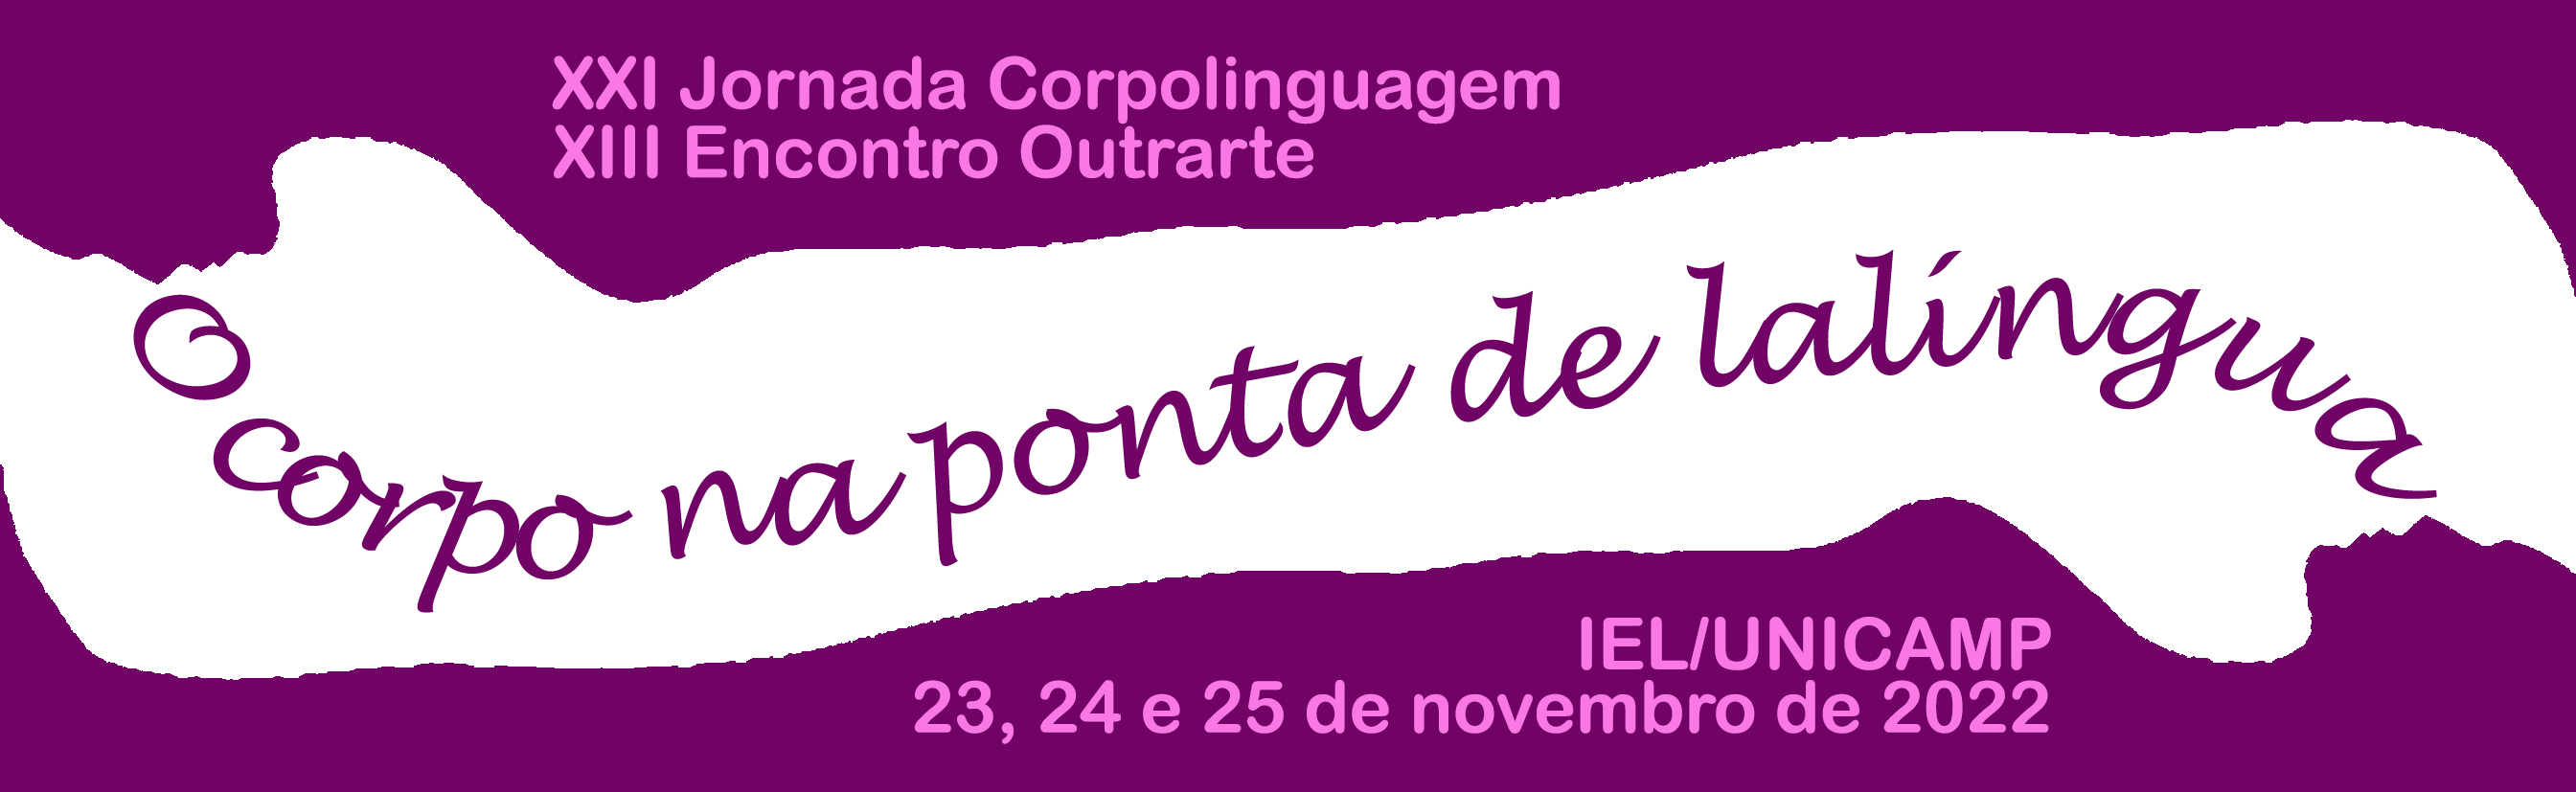 XXI Jornada Corpolinguagem / XIII Encontro Outrarte